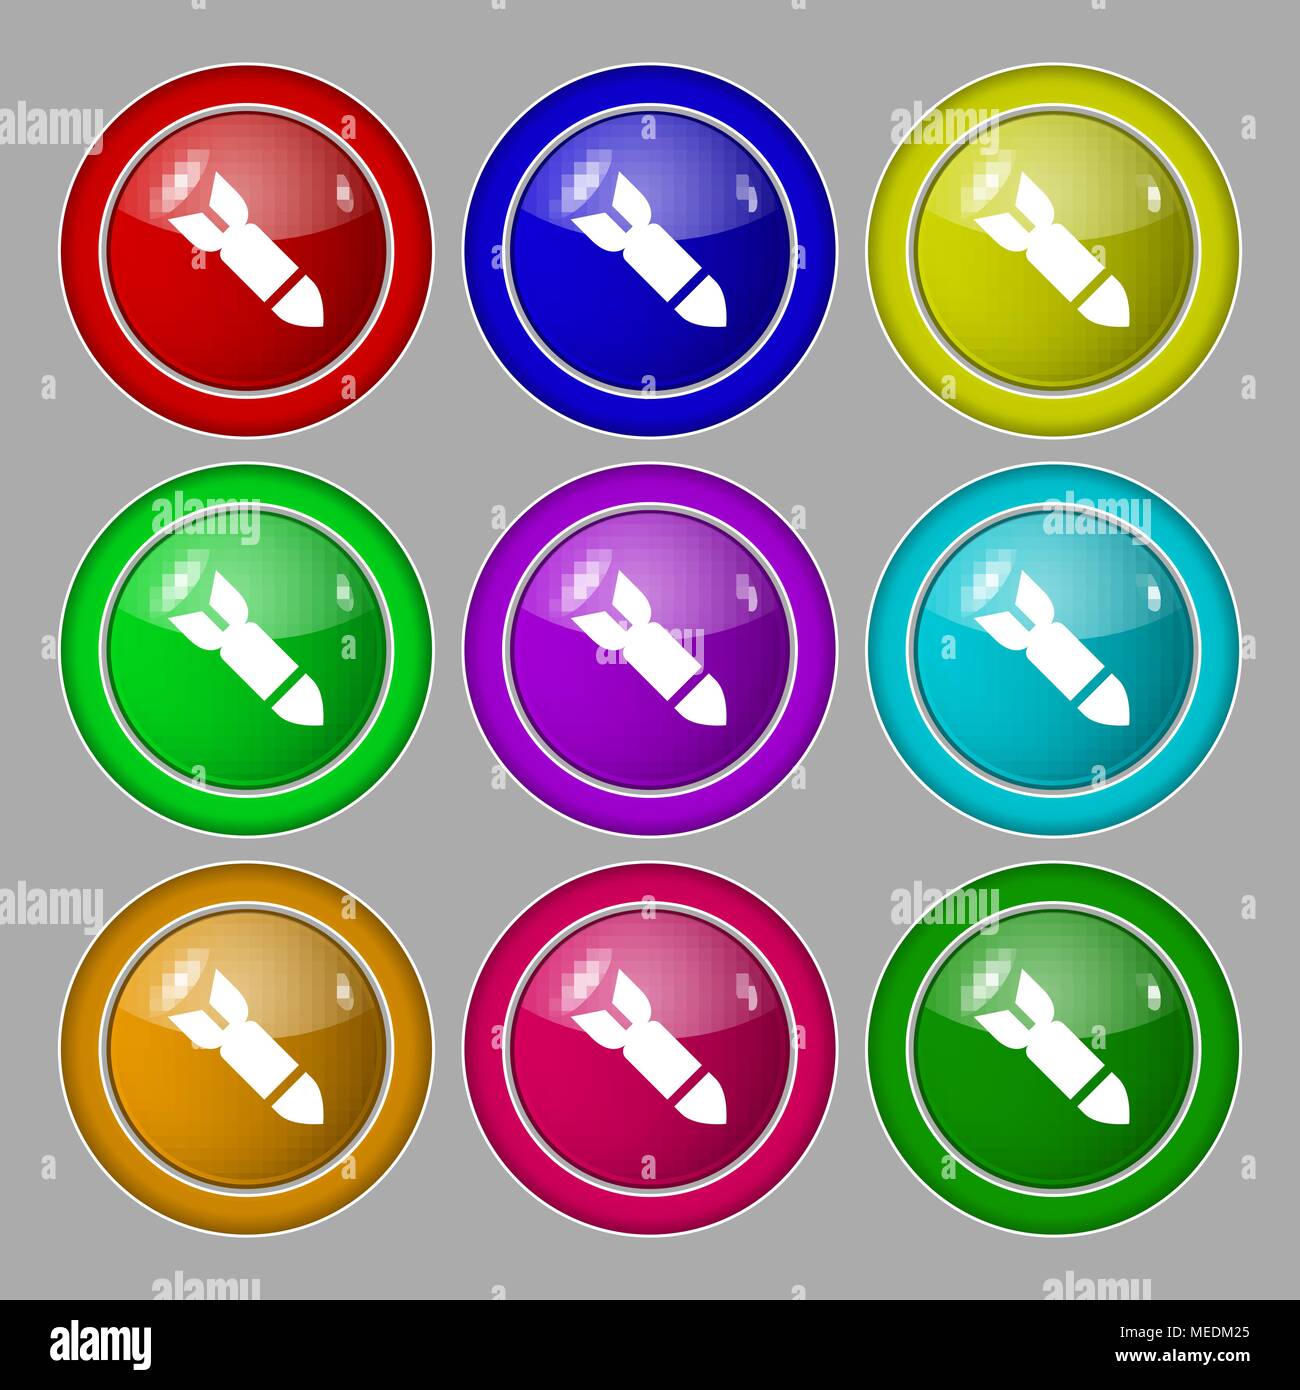 Rakete Rakete Waffensymbol unterzeichnen. Symbol auf neun Runden farbigen Buttons. Vector Illustration Stock Vektor